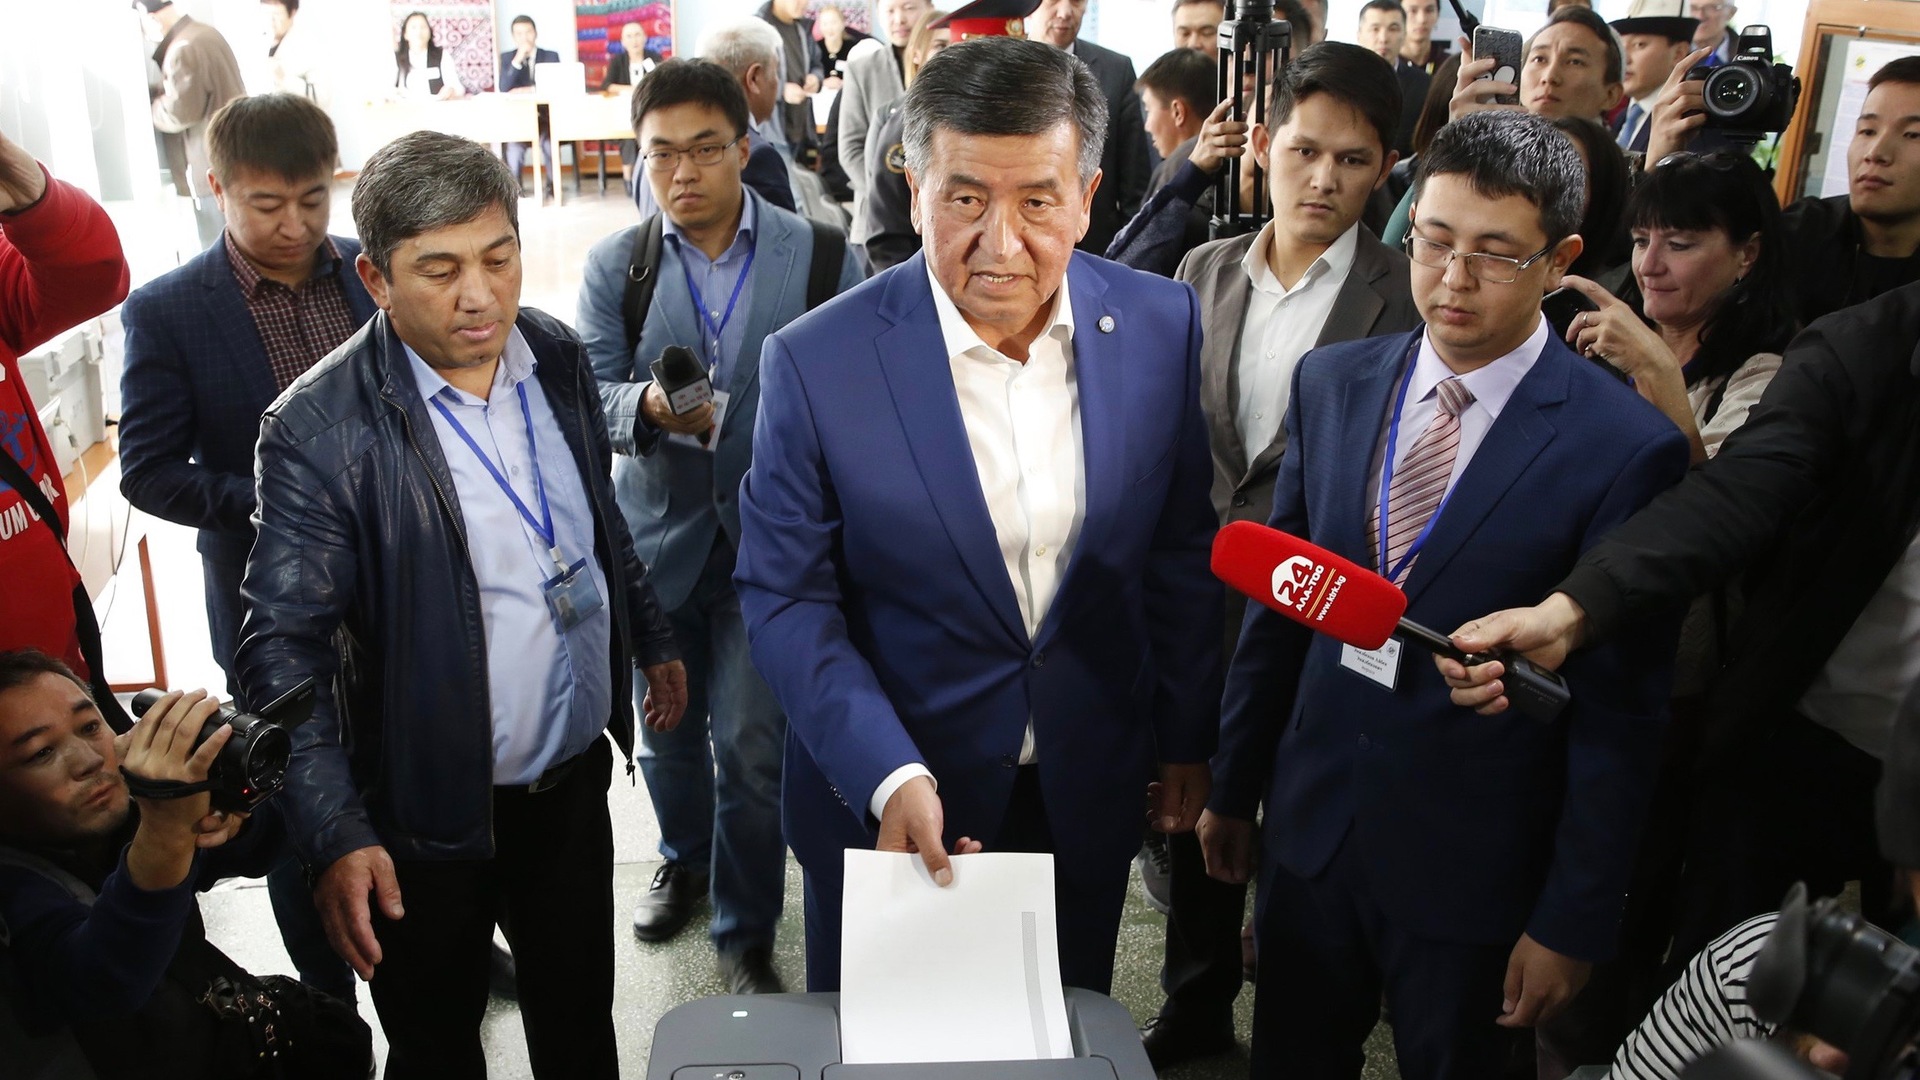 Giver Kirgisistans præsidentvalg håb for demokratiet i Centralasien? Af Frederik Forrai Ørskov